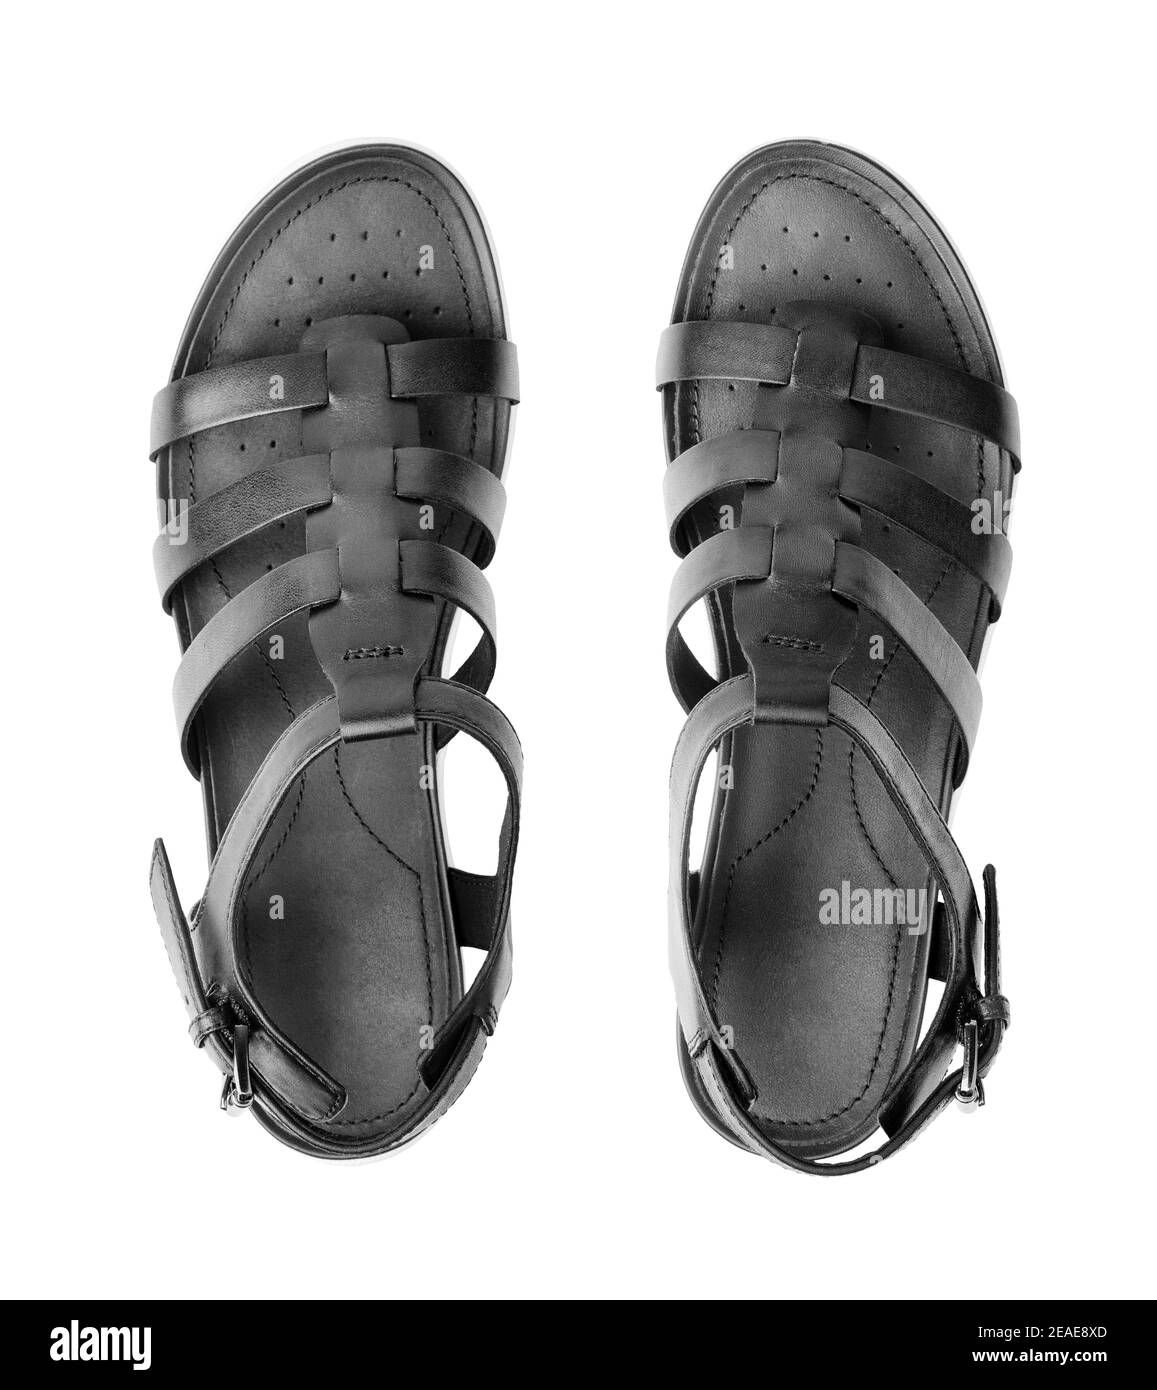 Sandali femminili neri su sfondo bianco, vista dall'alto, eleganti sandali  donna con cinturino, paio di sandali estivi in pelle alla moda Foto stock -  Alamy